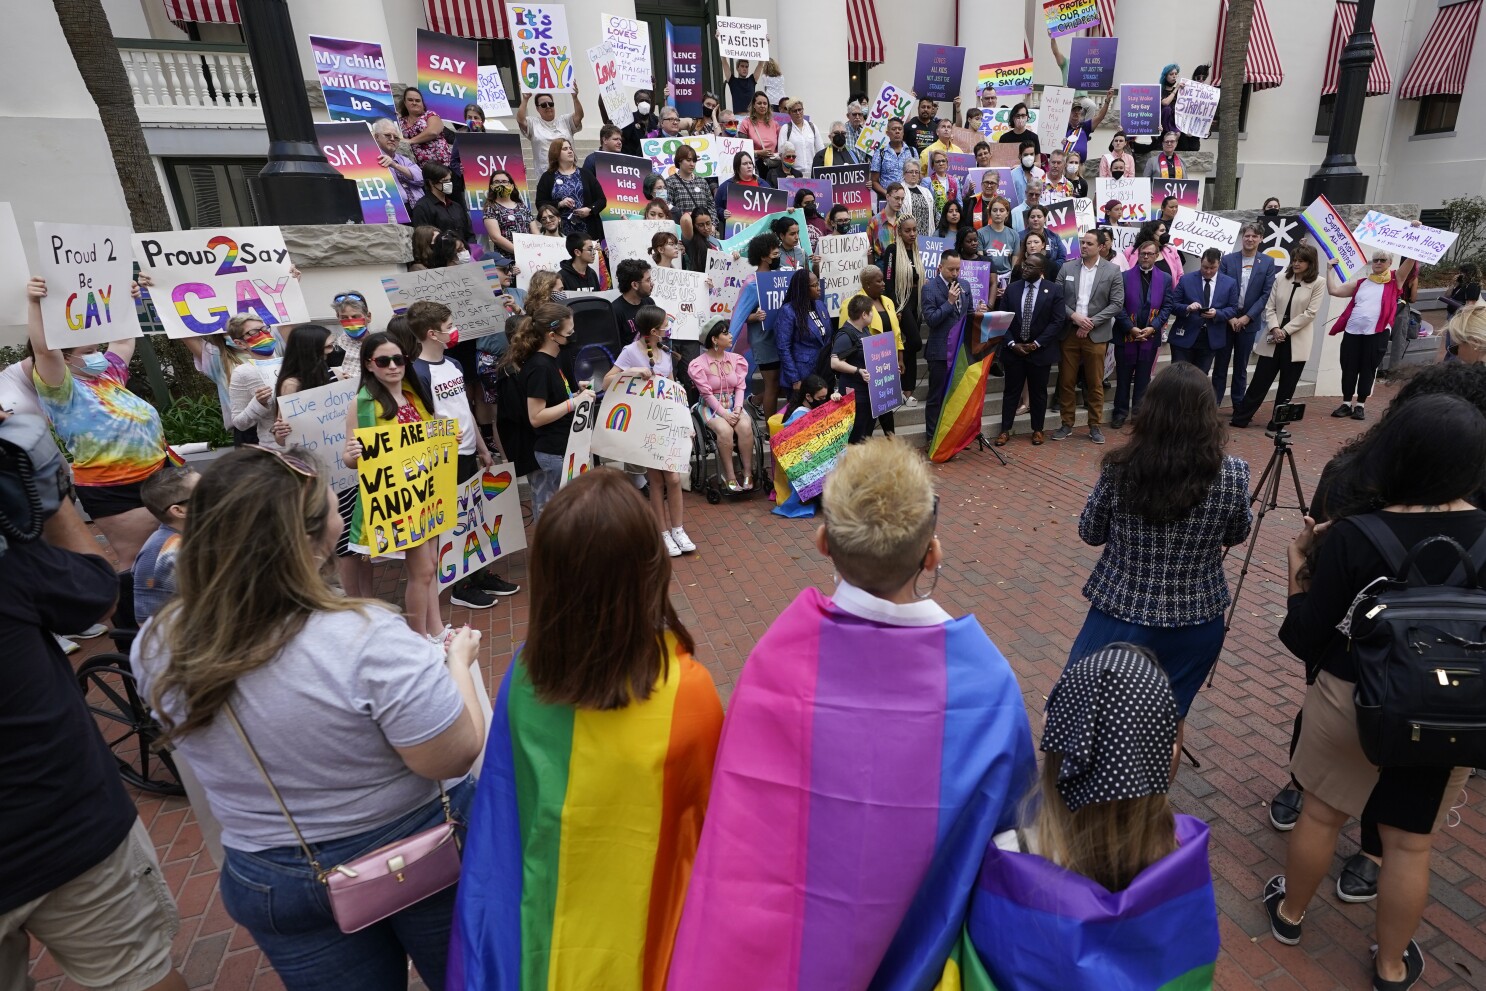 Los profesores de Florida reaccionan al proyecto de ley "no digas gay"